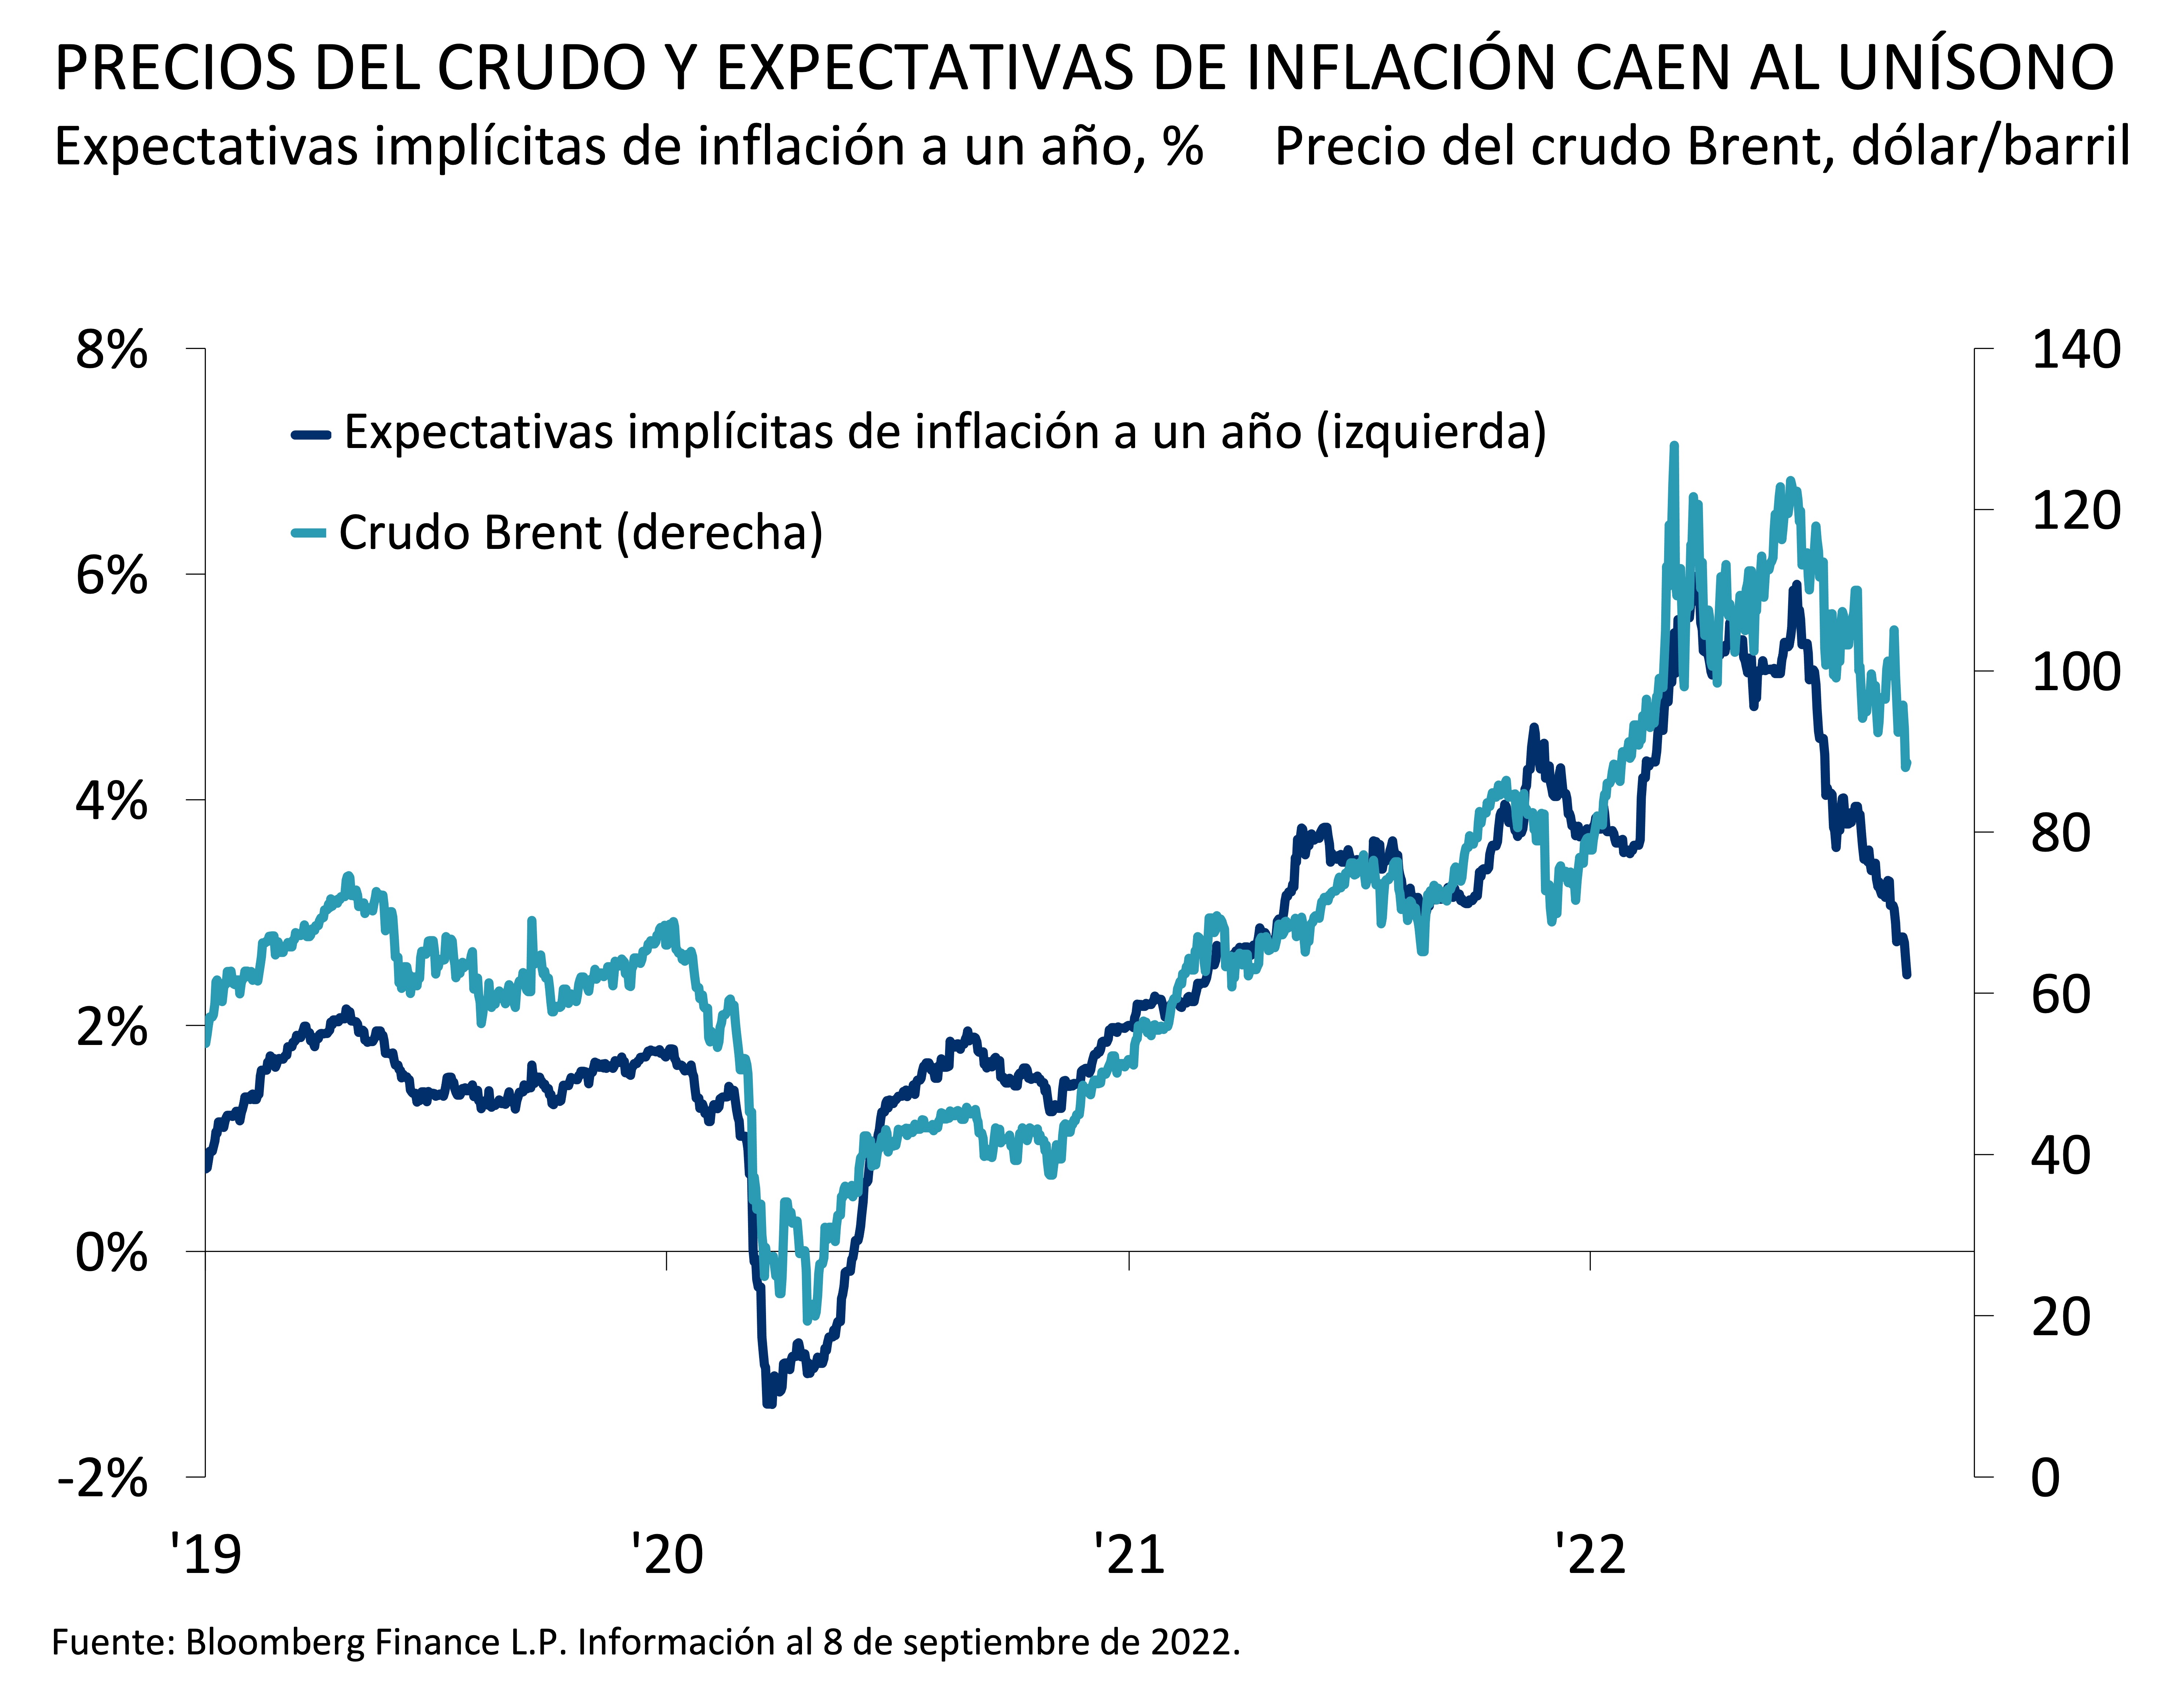 Este gráfico muestra las expectativas implícitas de inflación del mercado a un año en comparación con los precios del crudo Brent entre 2019 y 2022. 